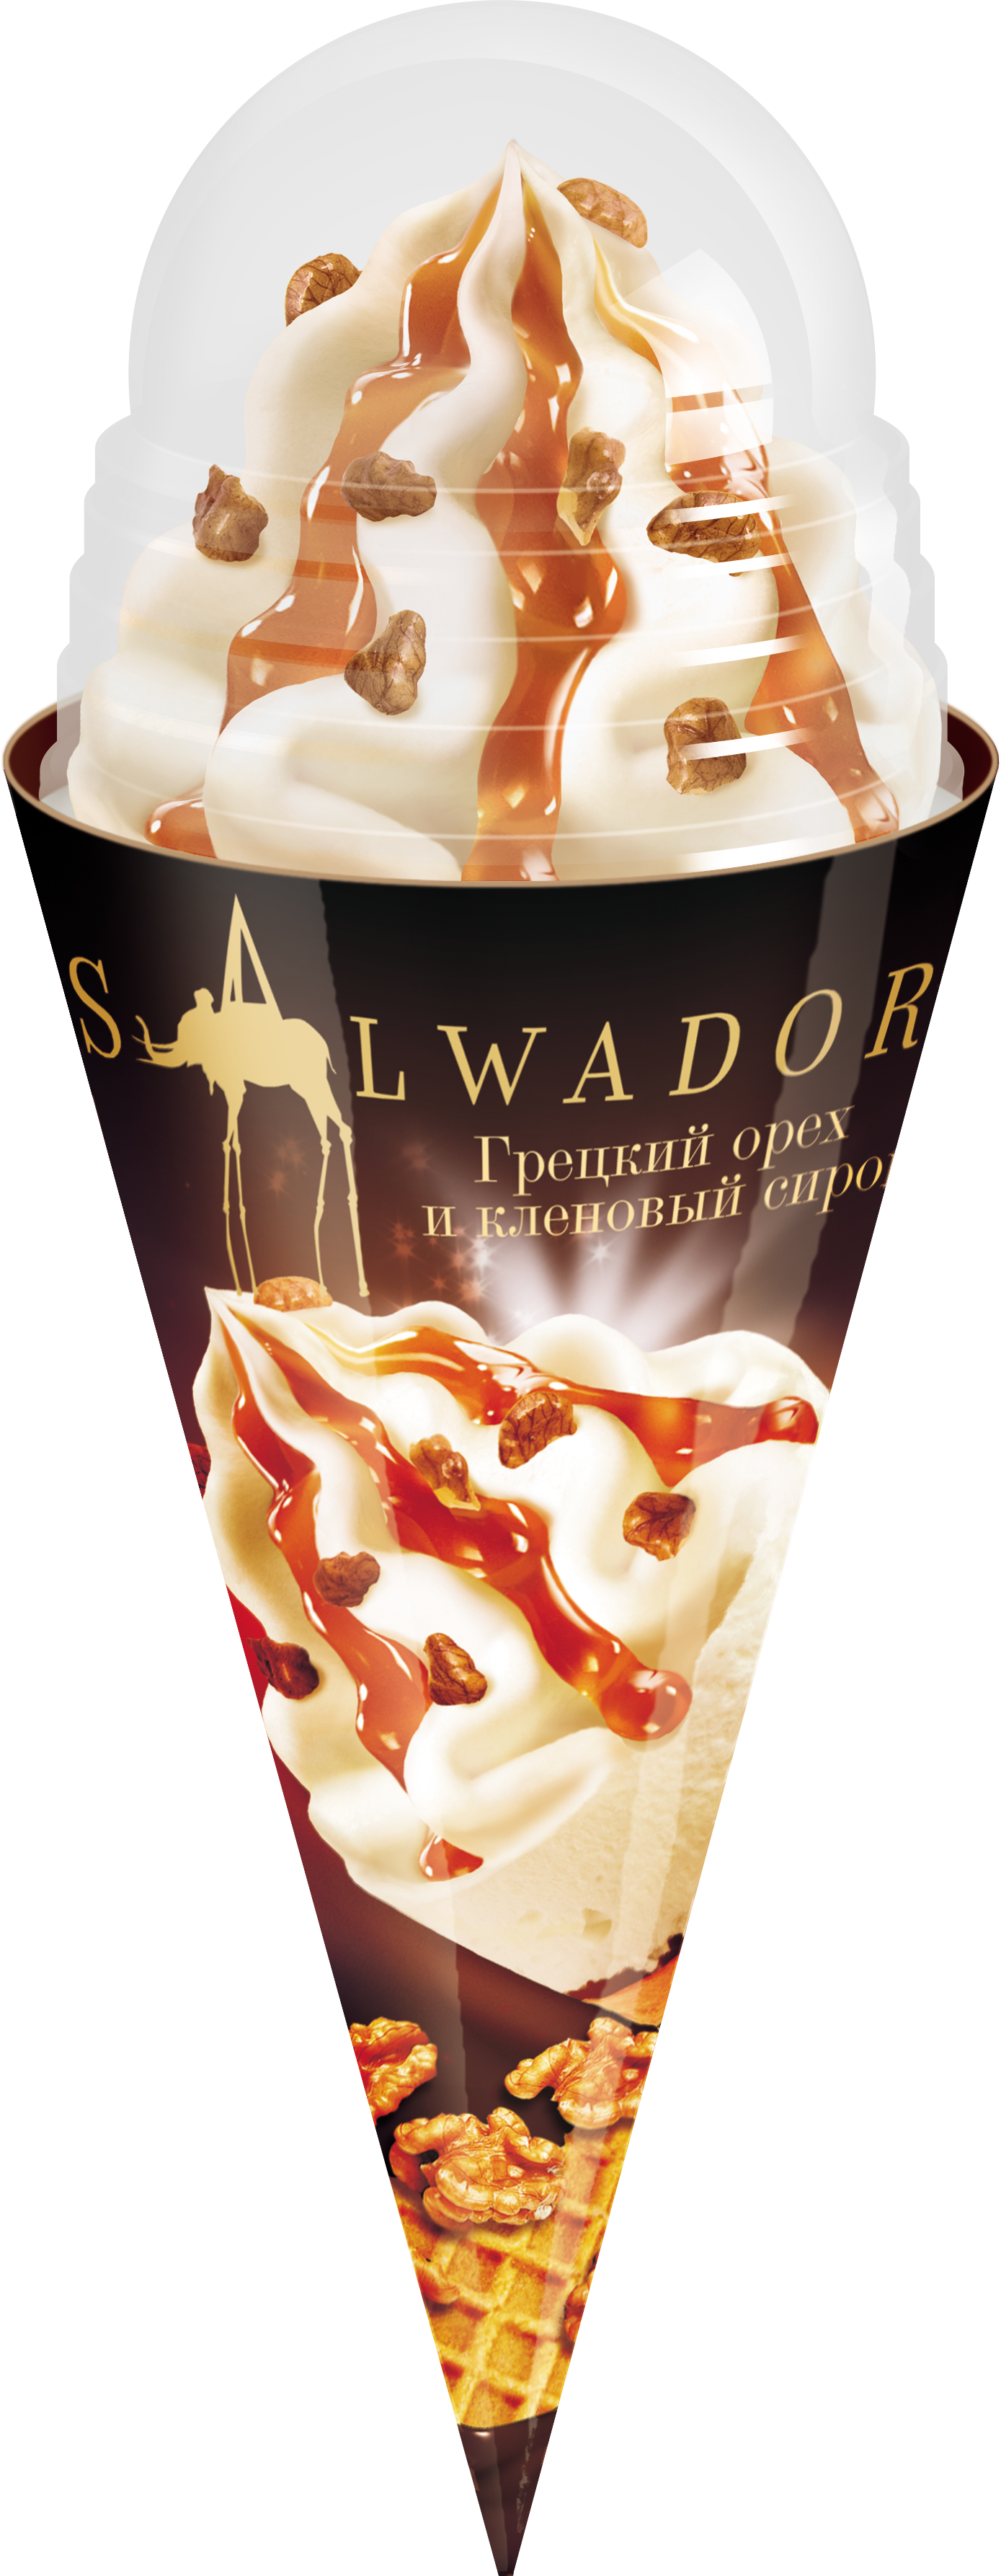 Мороженое с кленовым сиропом и грецким орехом. Мороженое salwadore грецкий орех. Рожок salwadore. Salwadore рожок грецкий орех. Мороженое Полярис Сальвадоре.